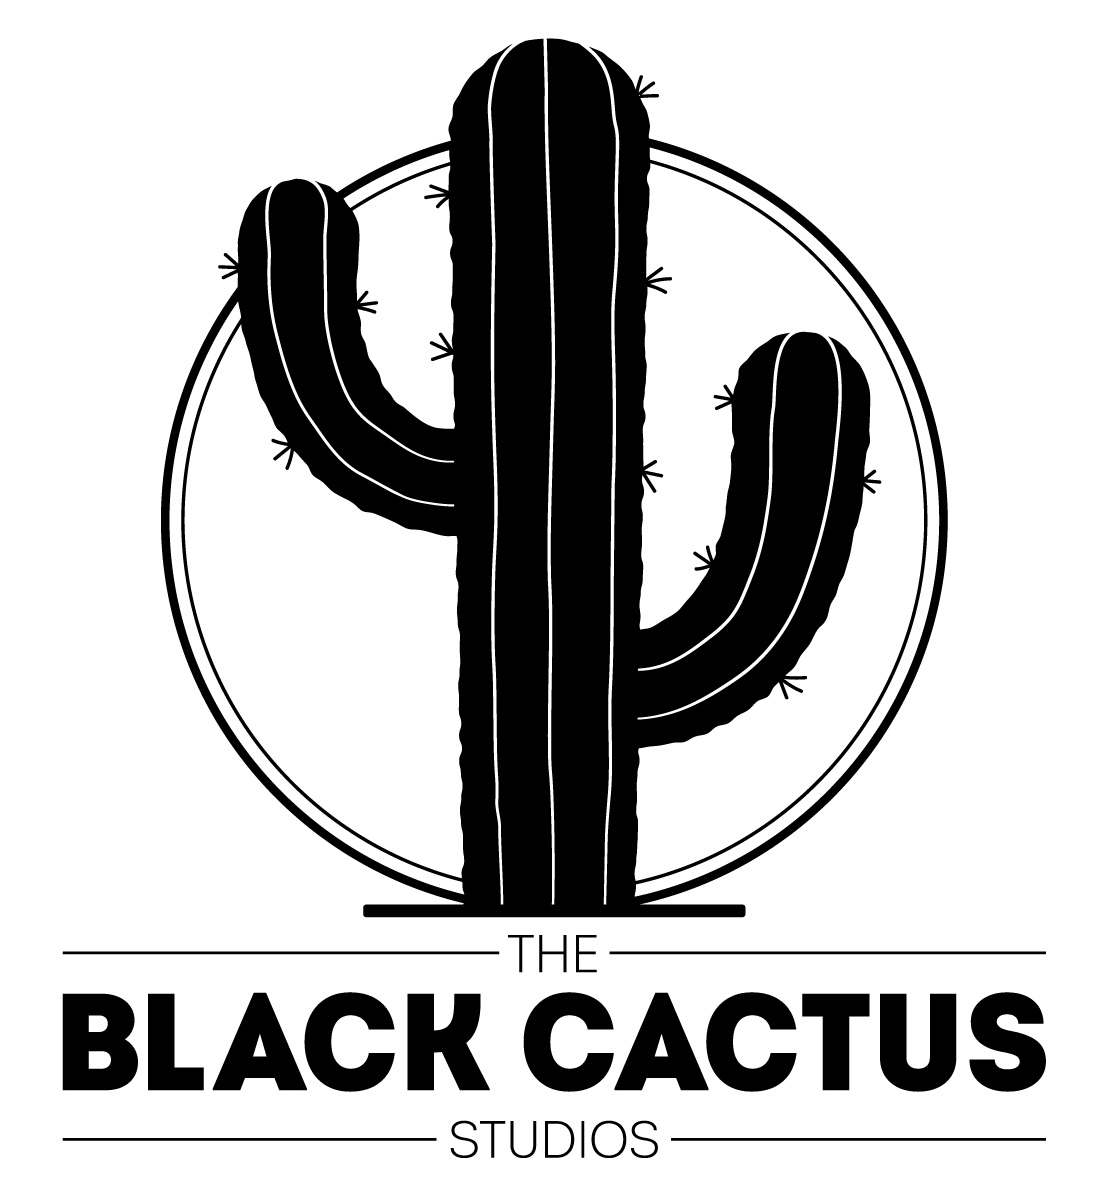 The Black Cactus